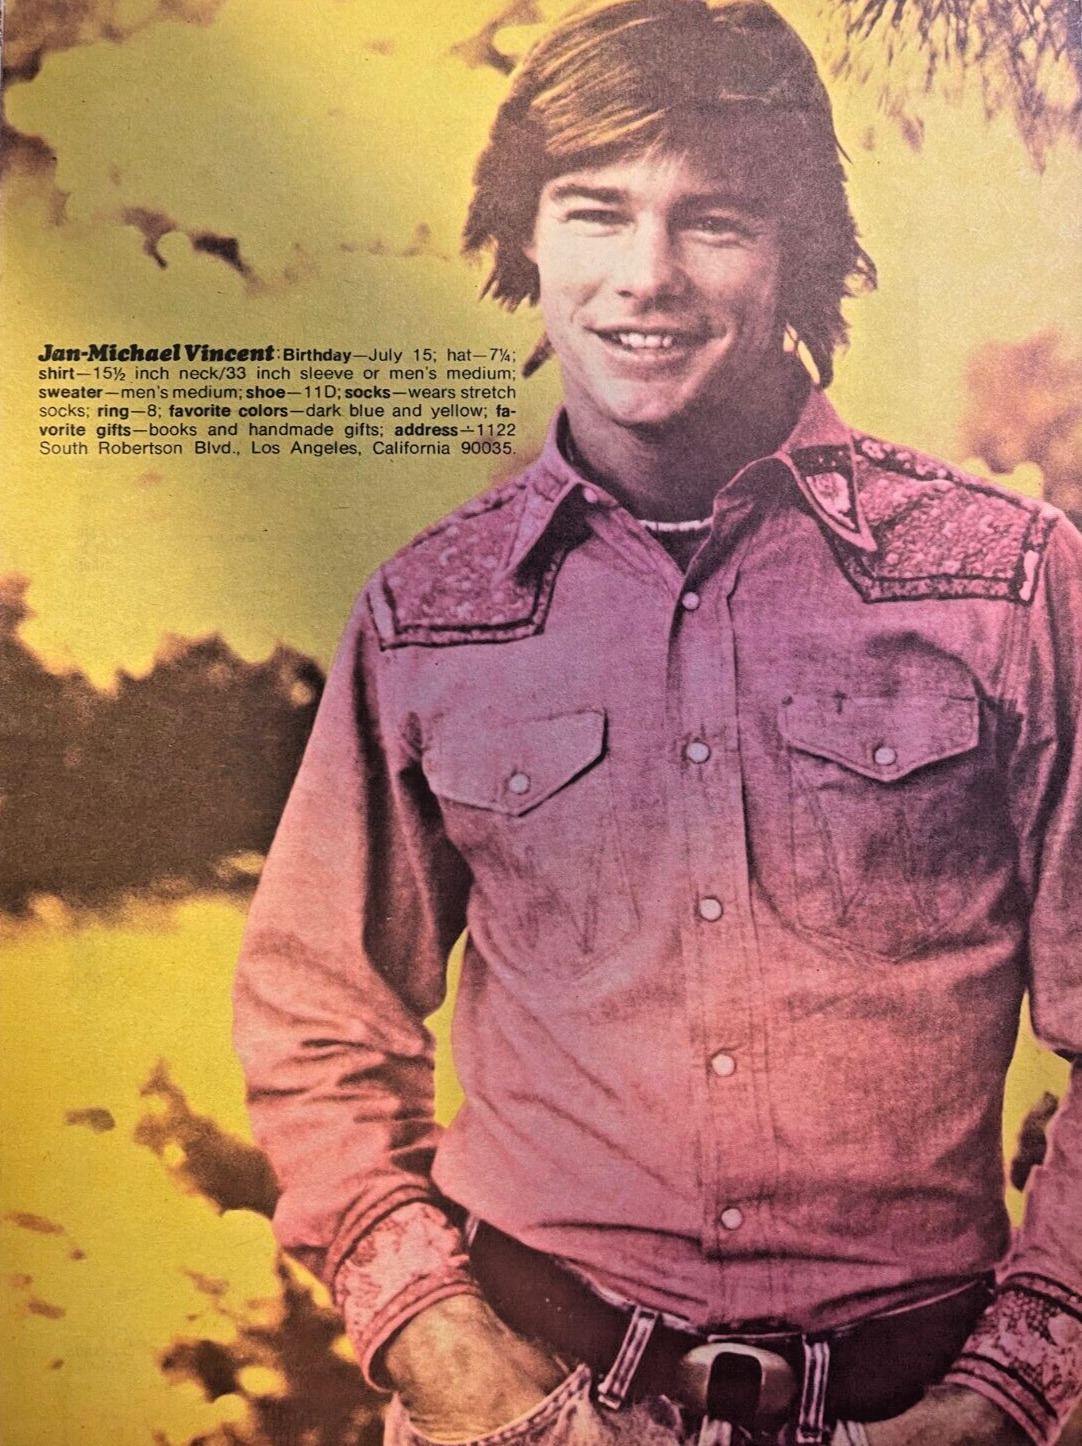 1972 Vintage Illustration Actor Jan-Michael Vincent